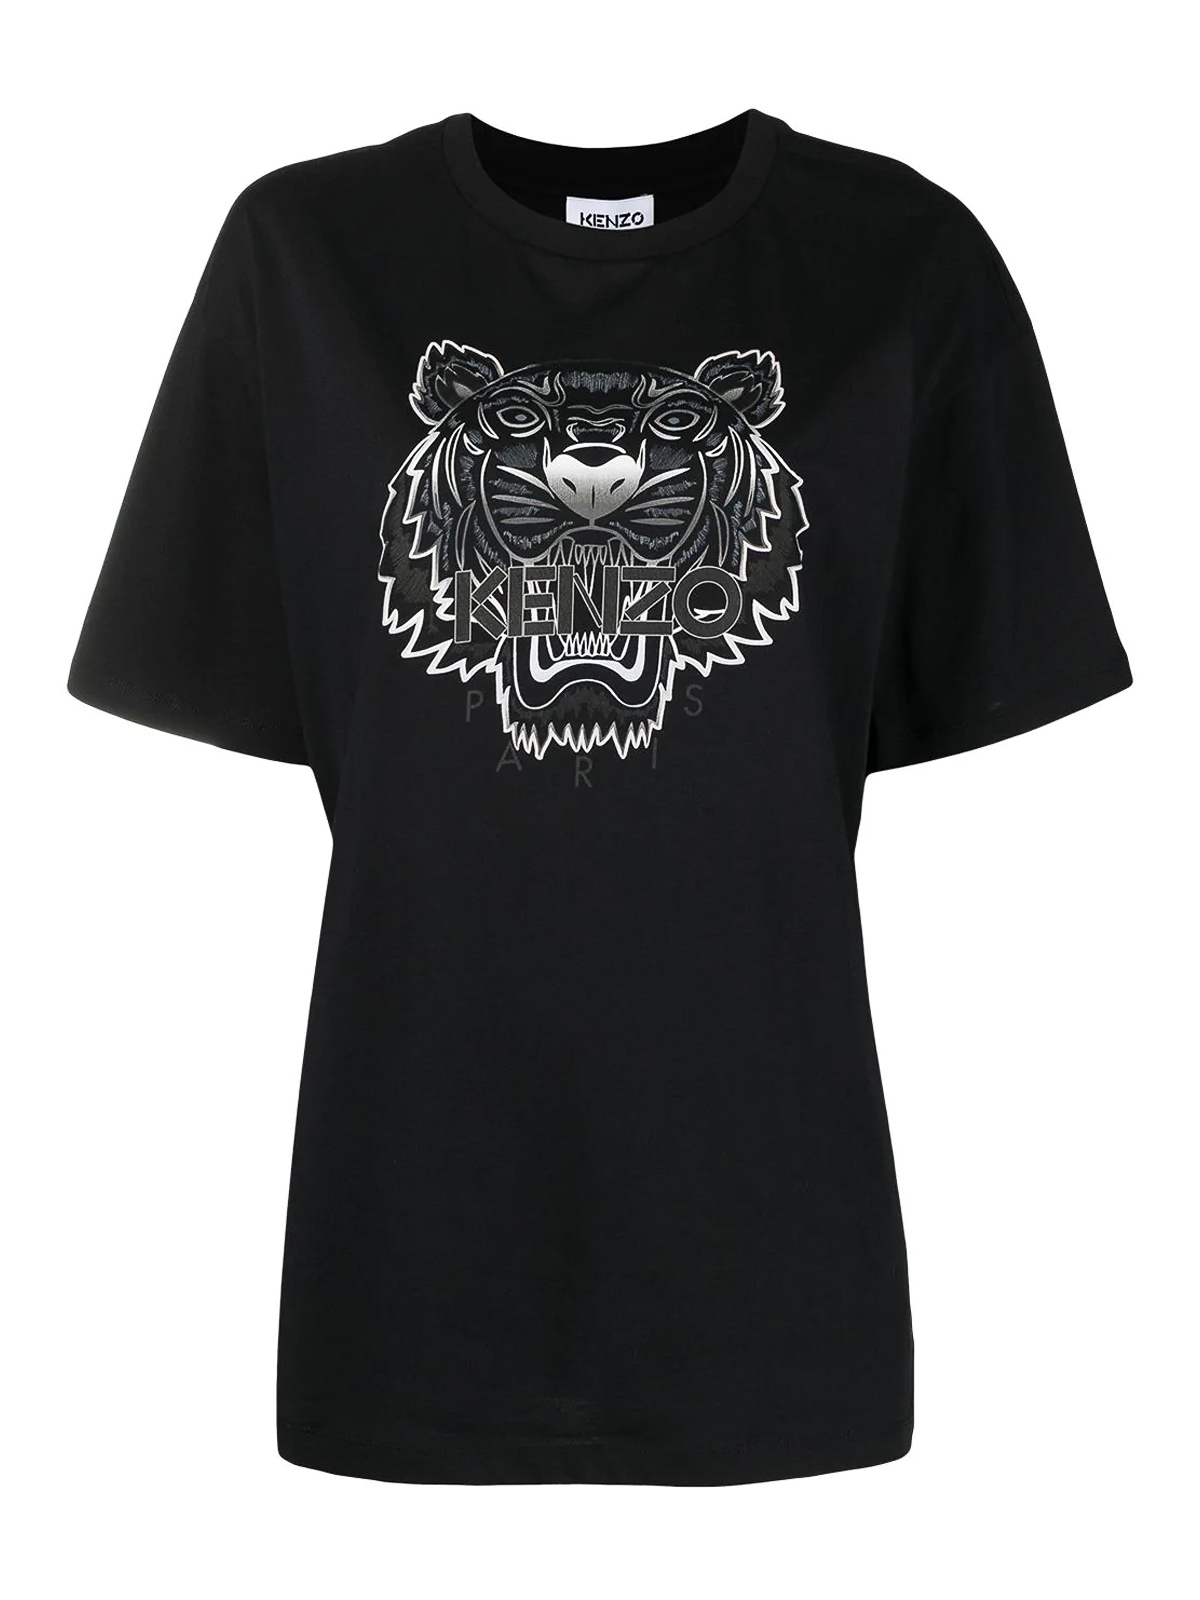 KENZO, Tiger Logo T Shirt, Women